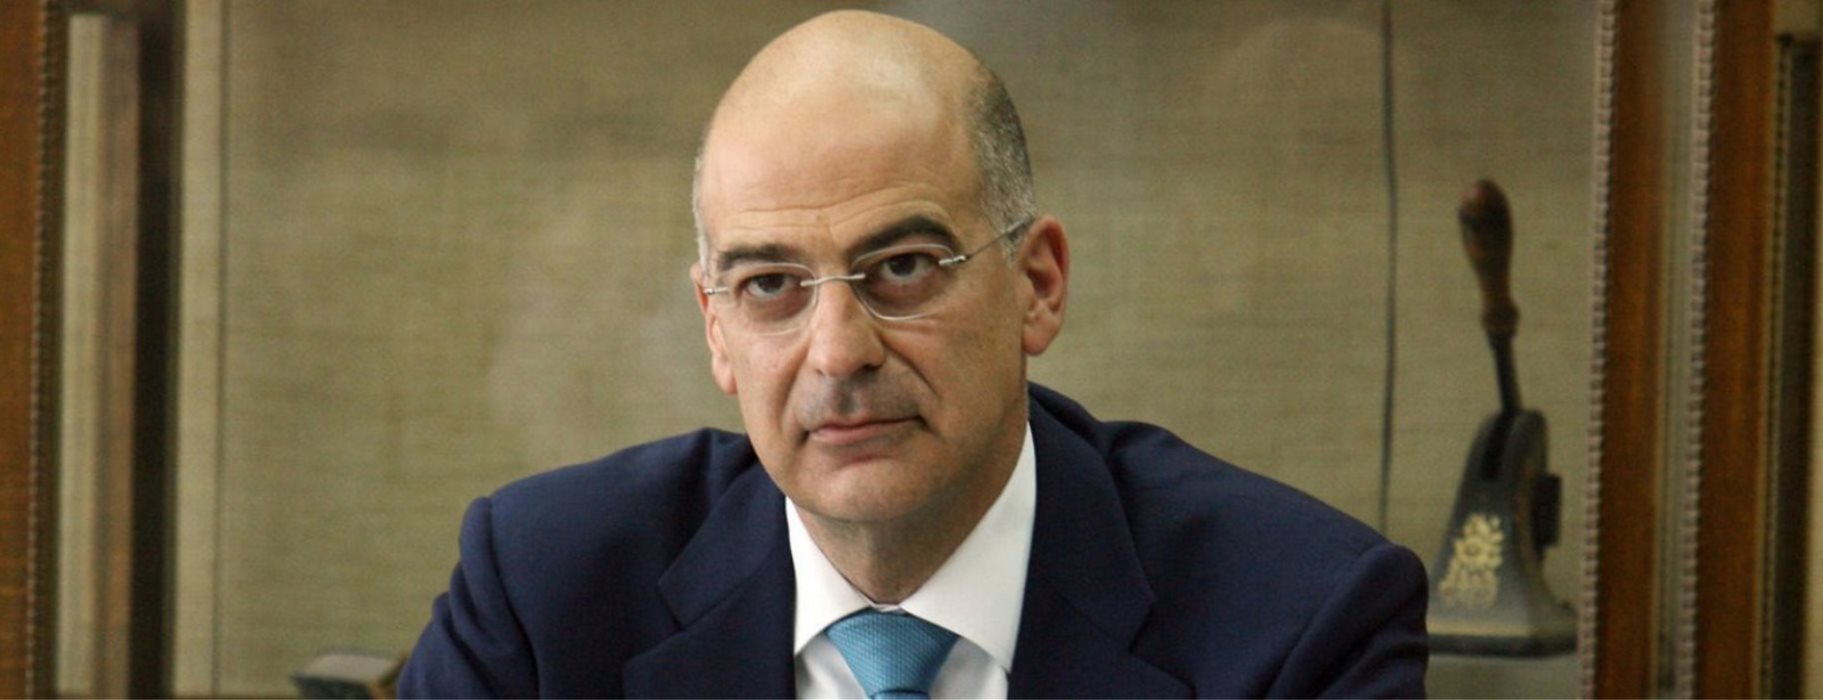 Στη Λευκωσία ο υπουργός Εξωτερικών Ν.Δένδιας για ενημέρωση της κυπριακής ηγεσίας μετά τις επαφές με Μ.Πομπέο